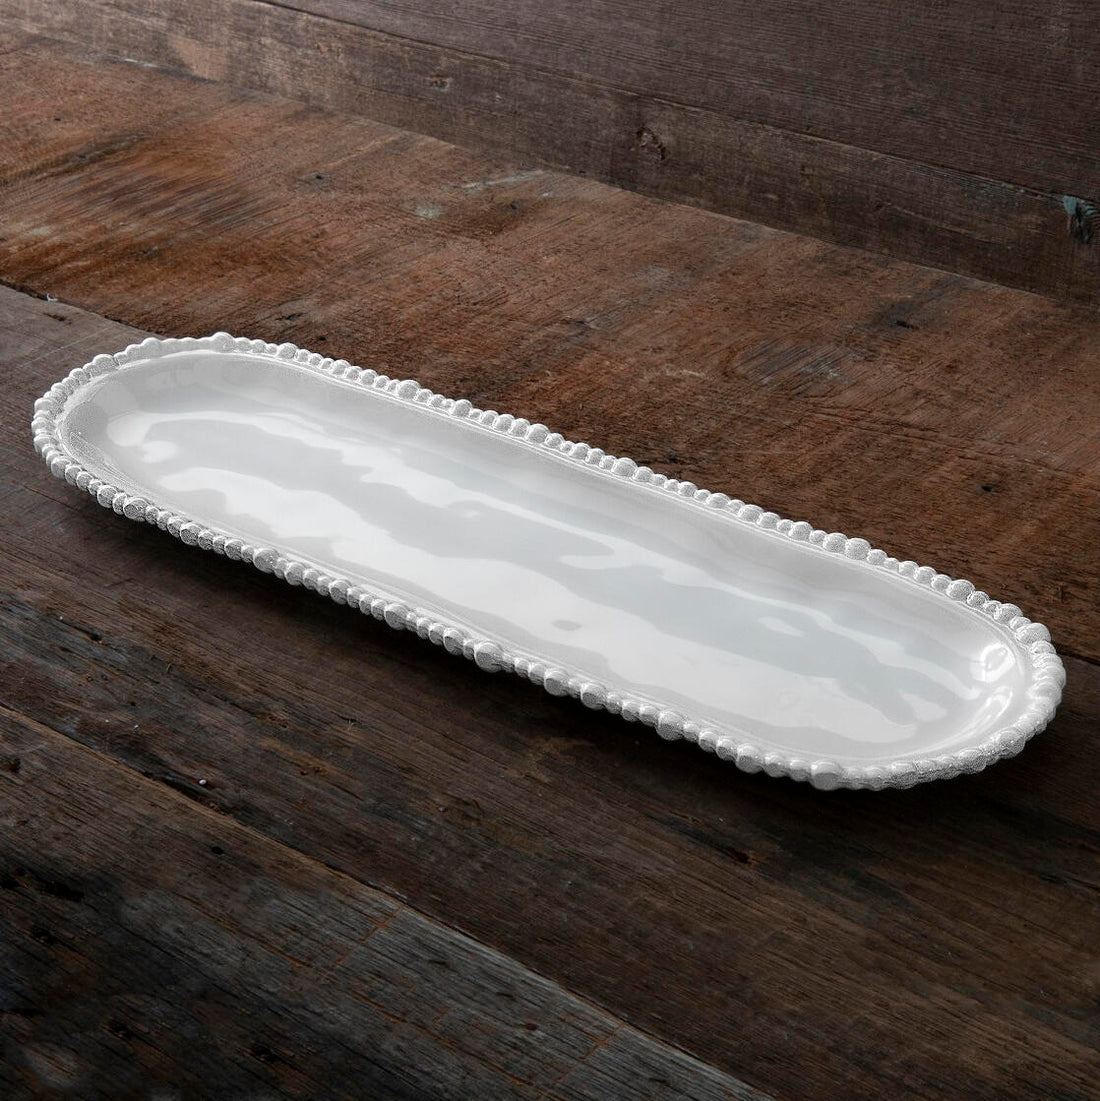 VIDA Alegria baguette platter white (md) SECONDS - NON REFUNDABLE